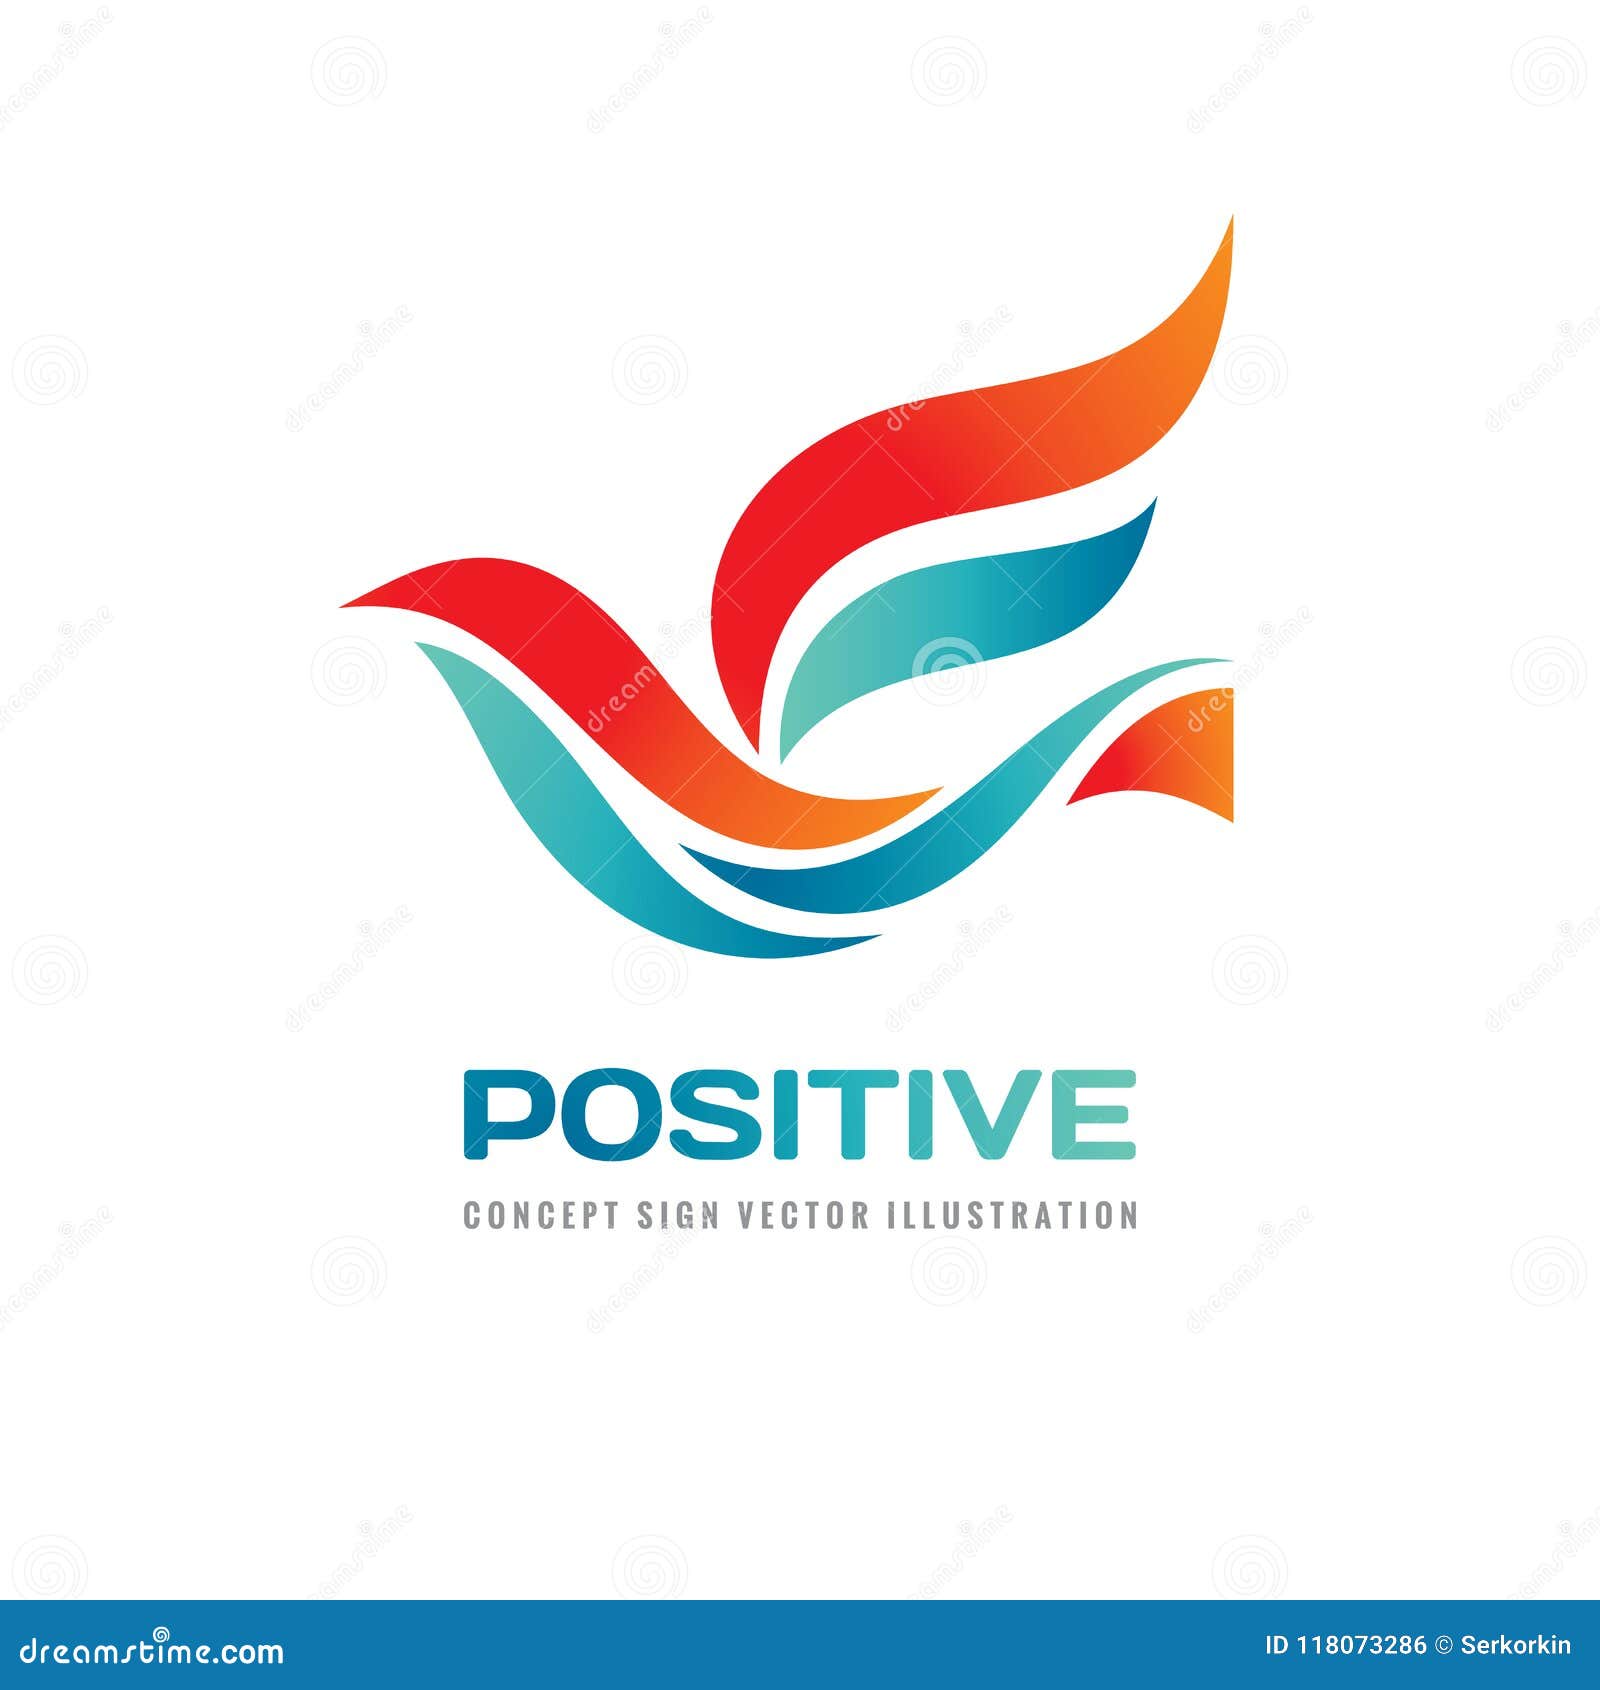 Inspiration creative logo design. Positive logo. Human concept logo sign.  Sport fitness logo. Health care logo Stock Vector | Adobe Stock